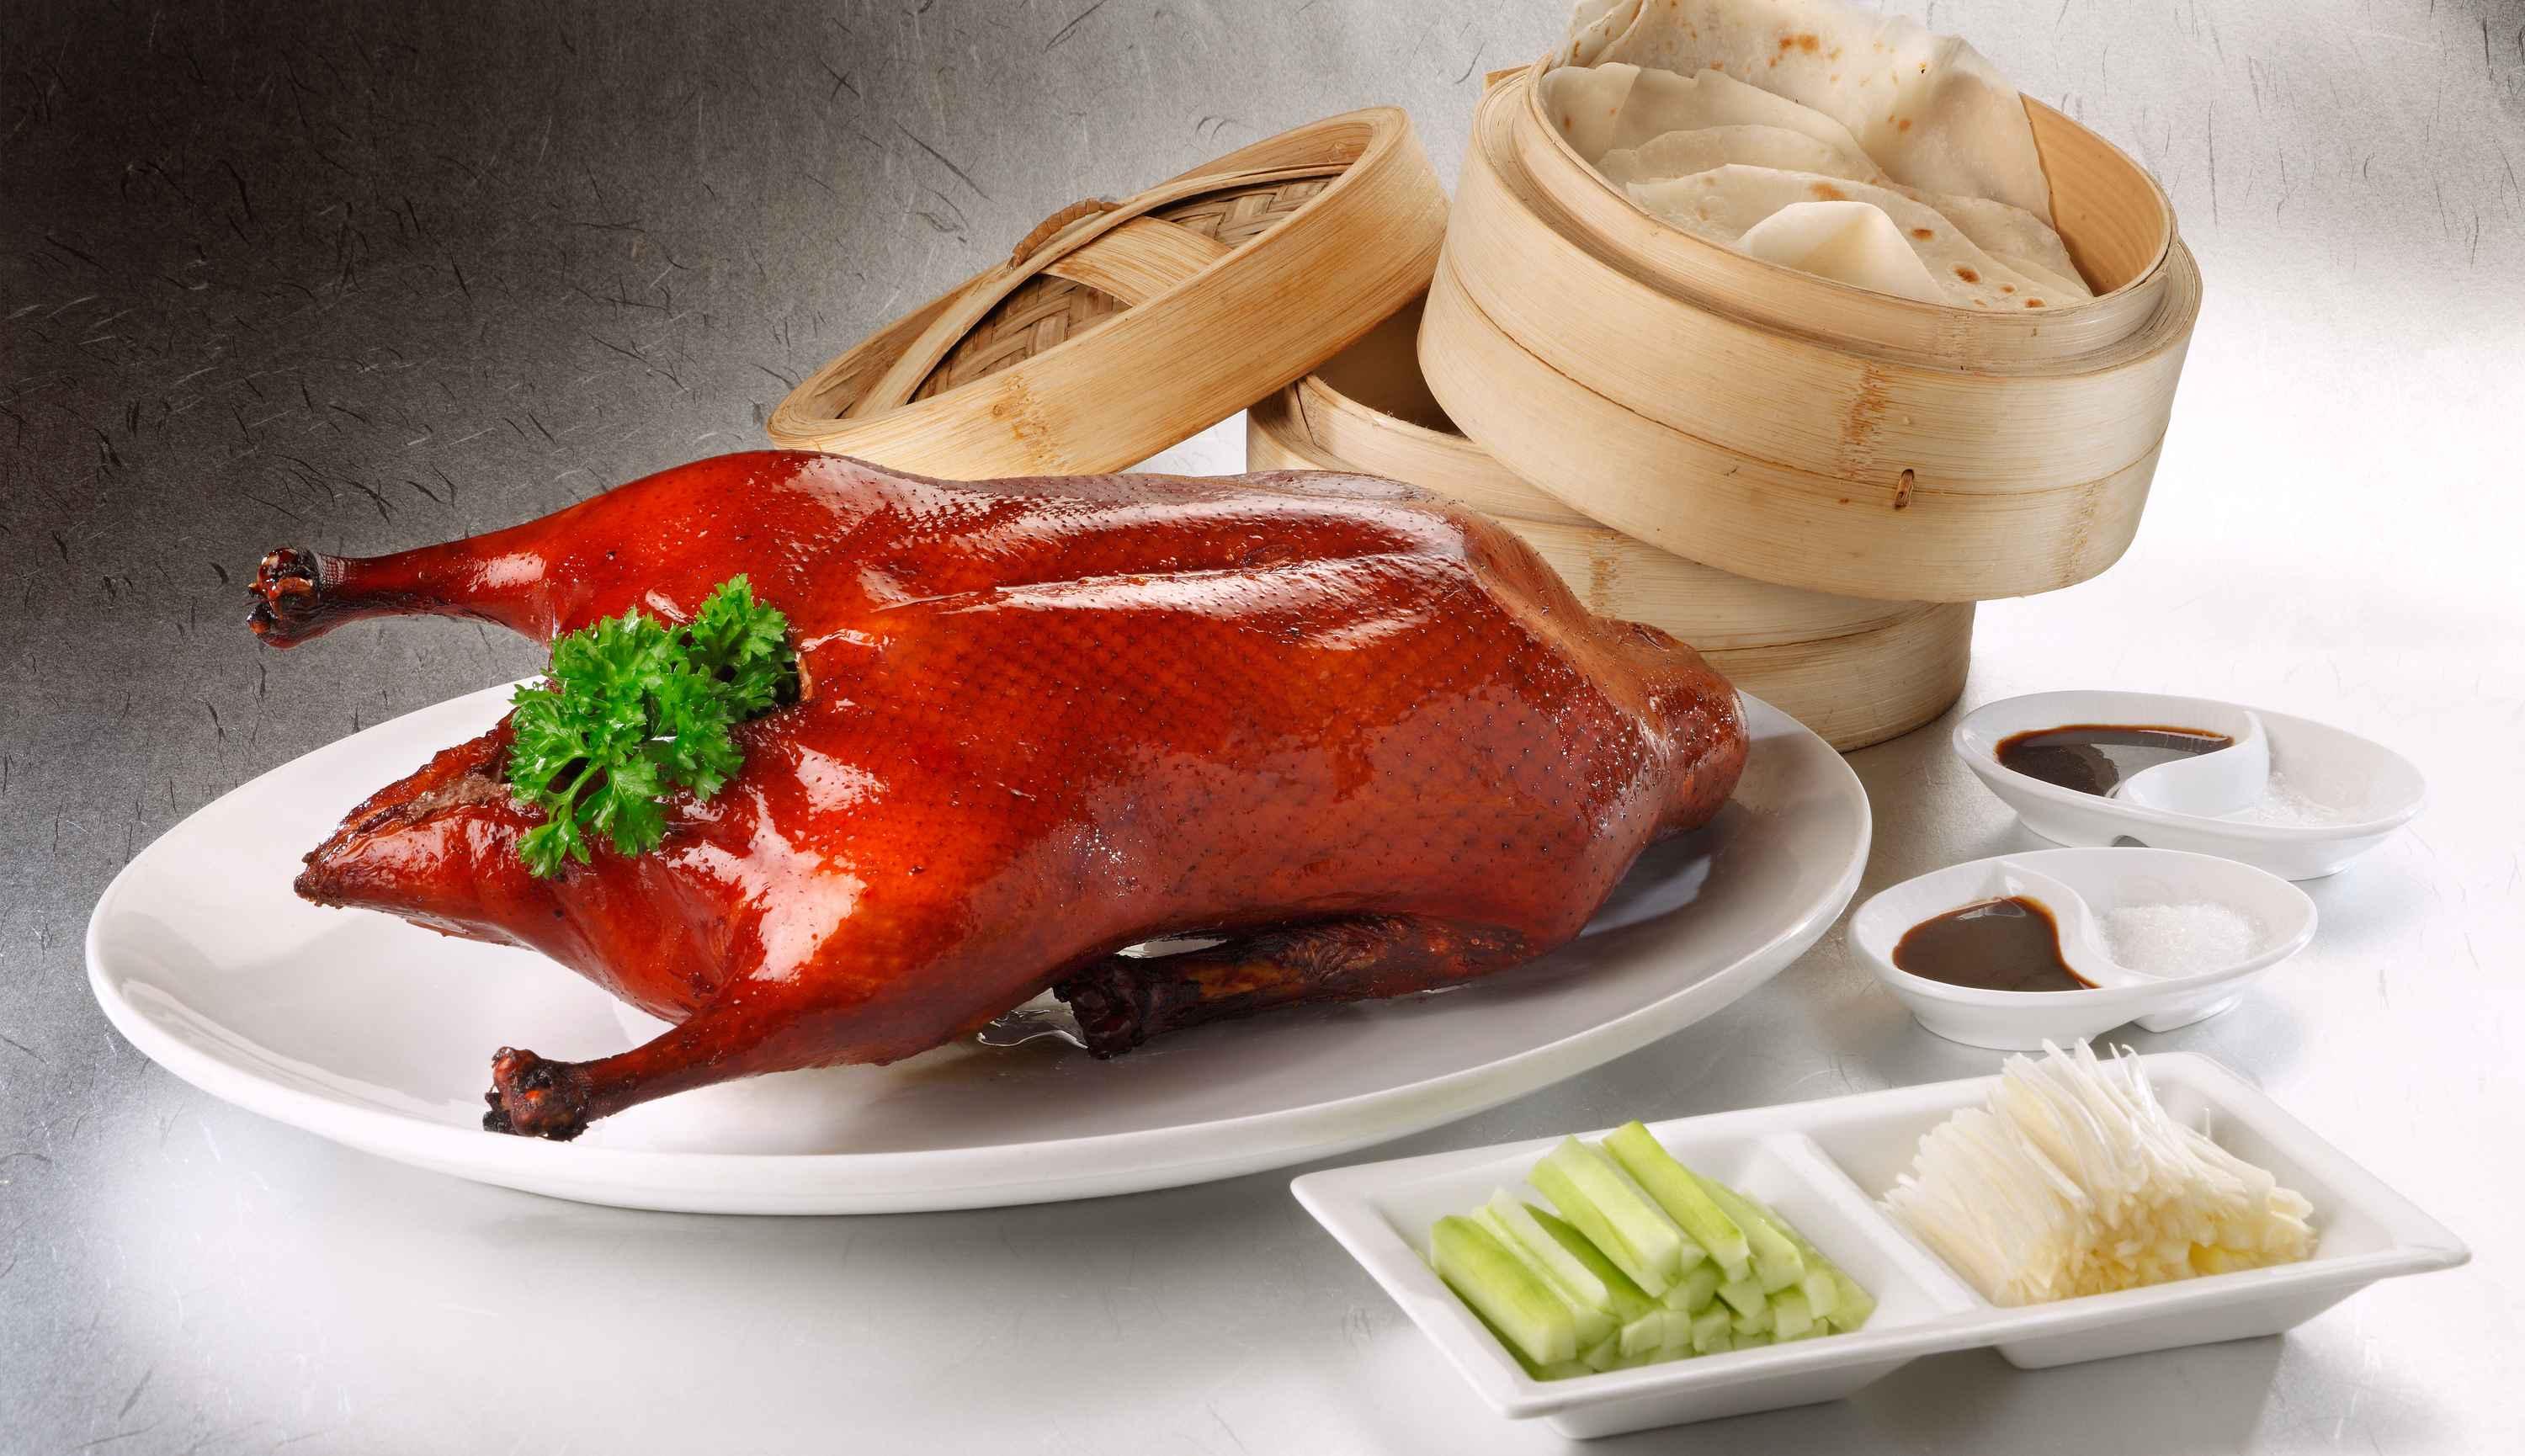 北京烤鸭早就告诉我们,做鸭很赚钱的.